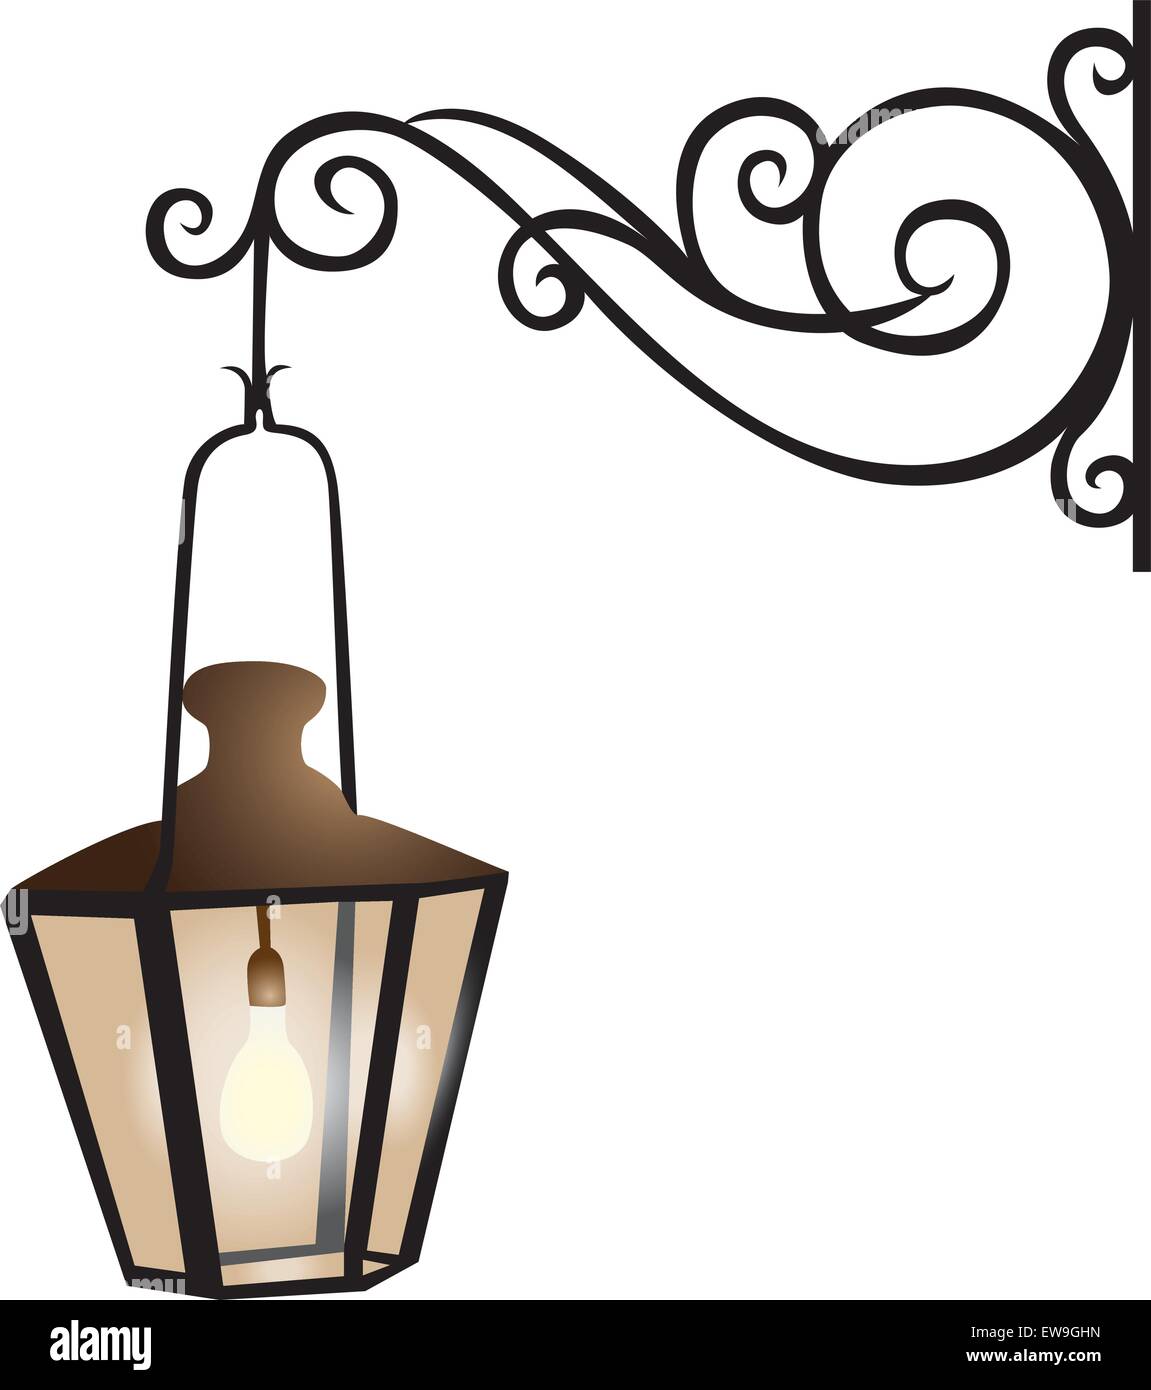 Street lantern illustration Stock Vector